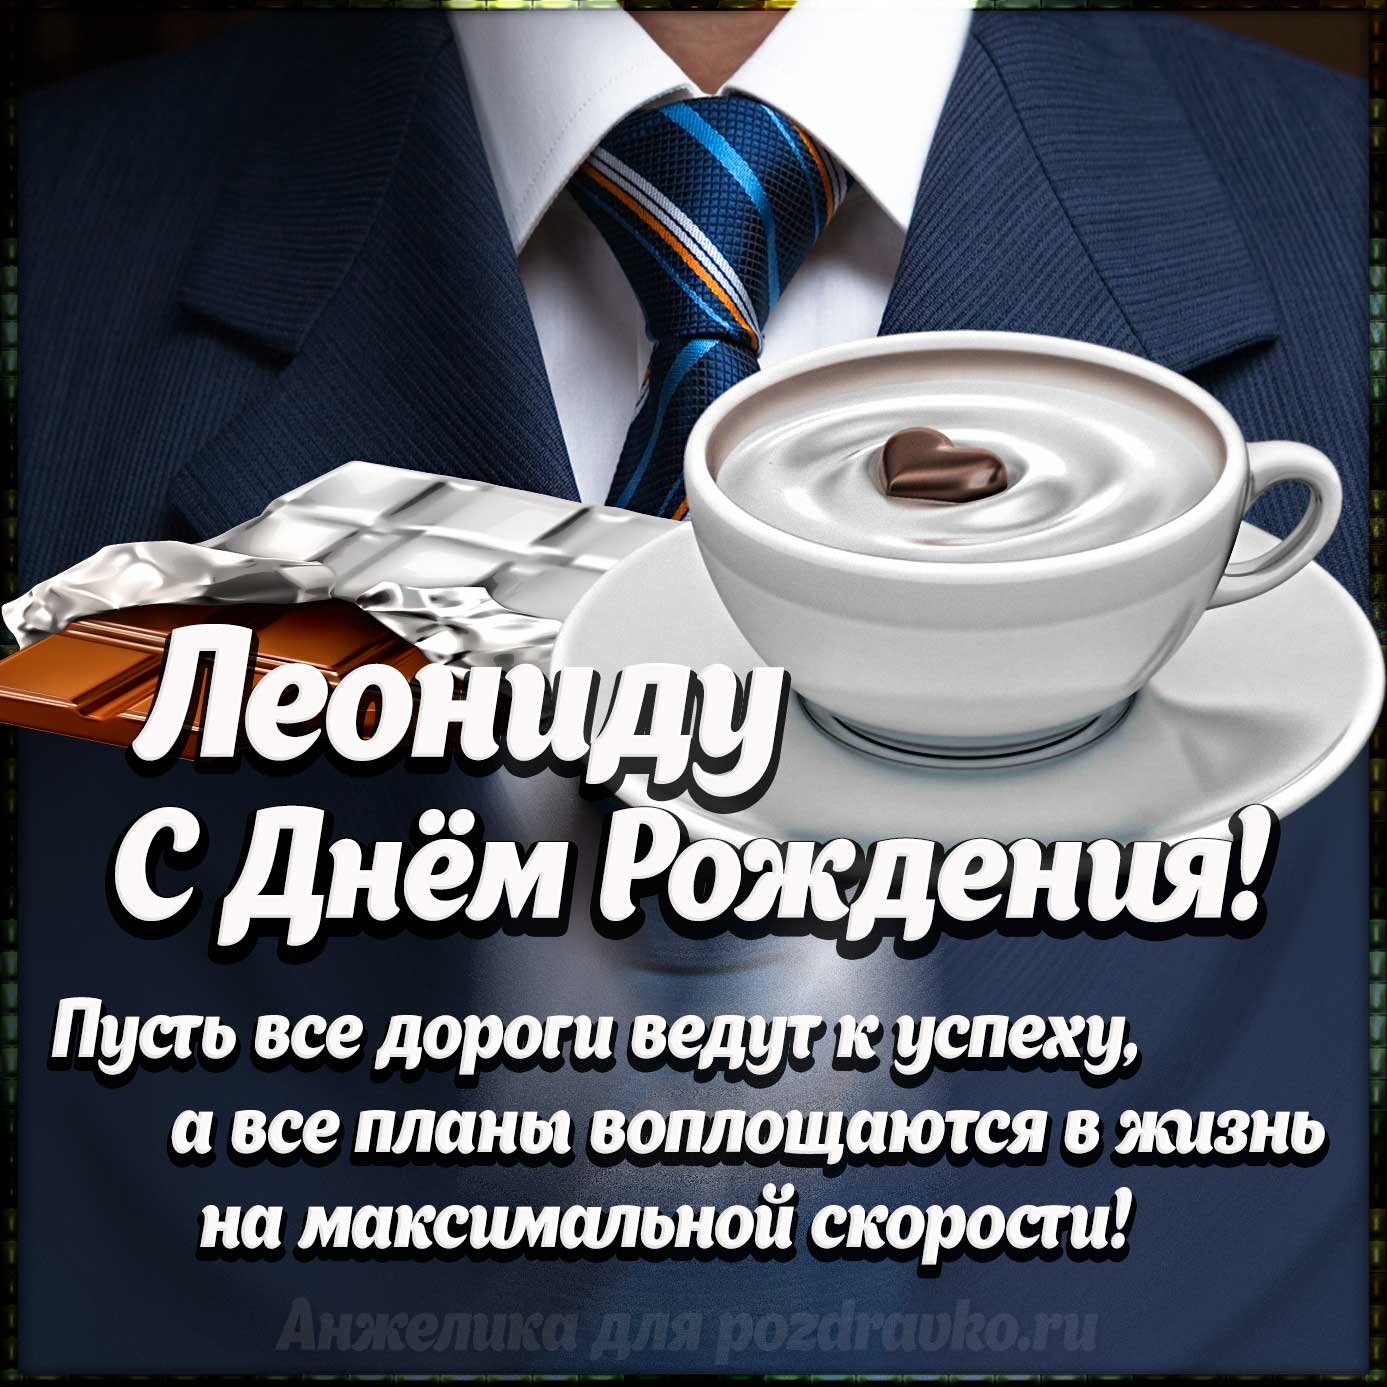 Открытка - Леониду с Днем Рождения с галстуком, кофе и пожеланием. Скачать бесплатно или отправить картинку.